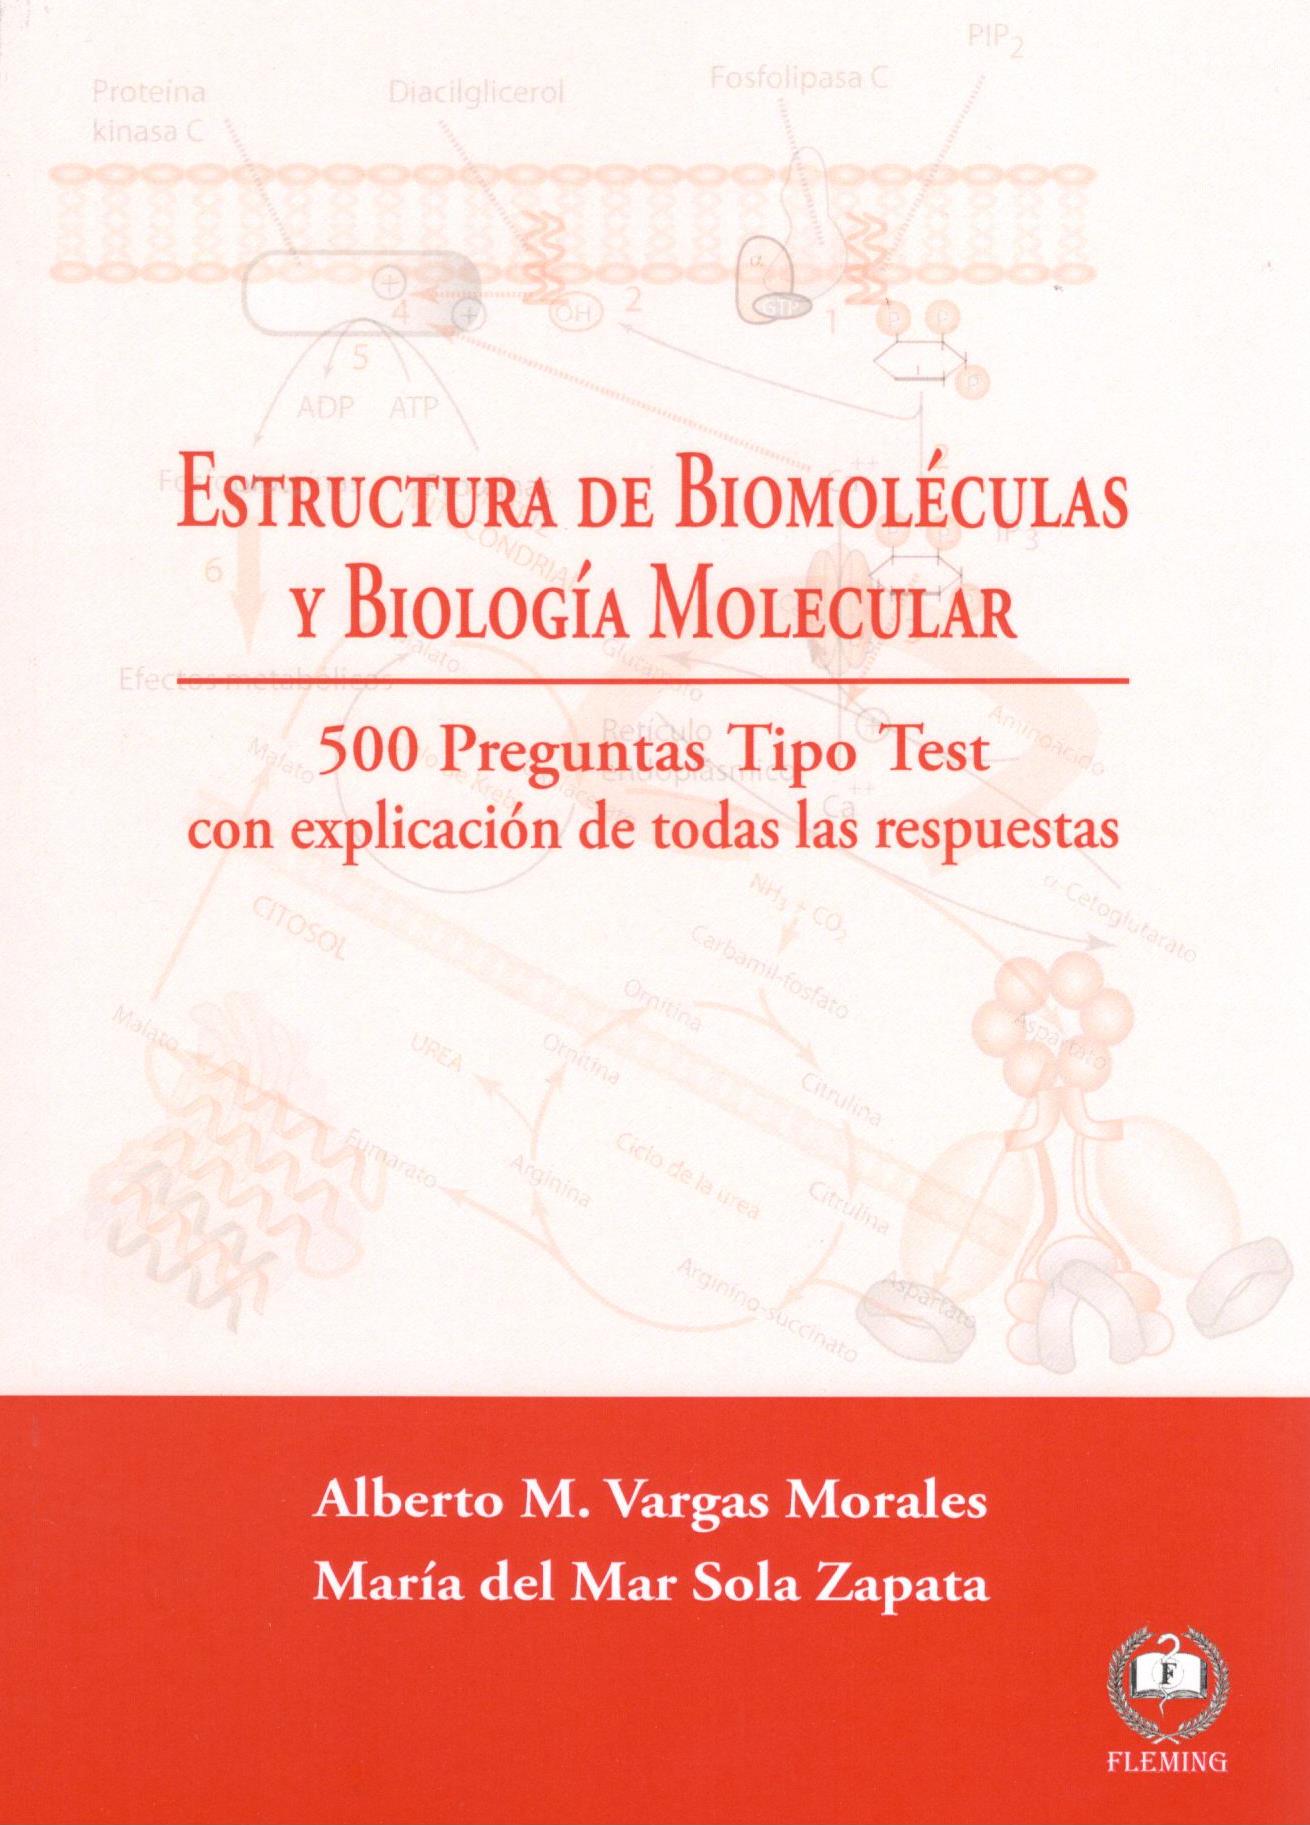 ESTRUCTURA DE BIOMOLECULAS Y BIOLOGIA MOLECULAR